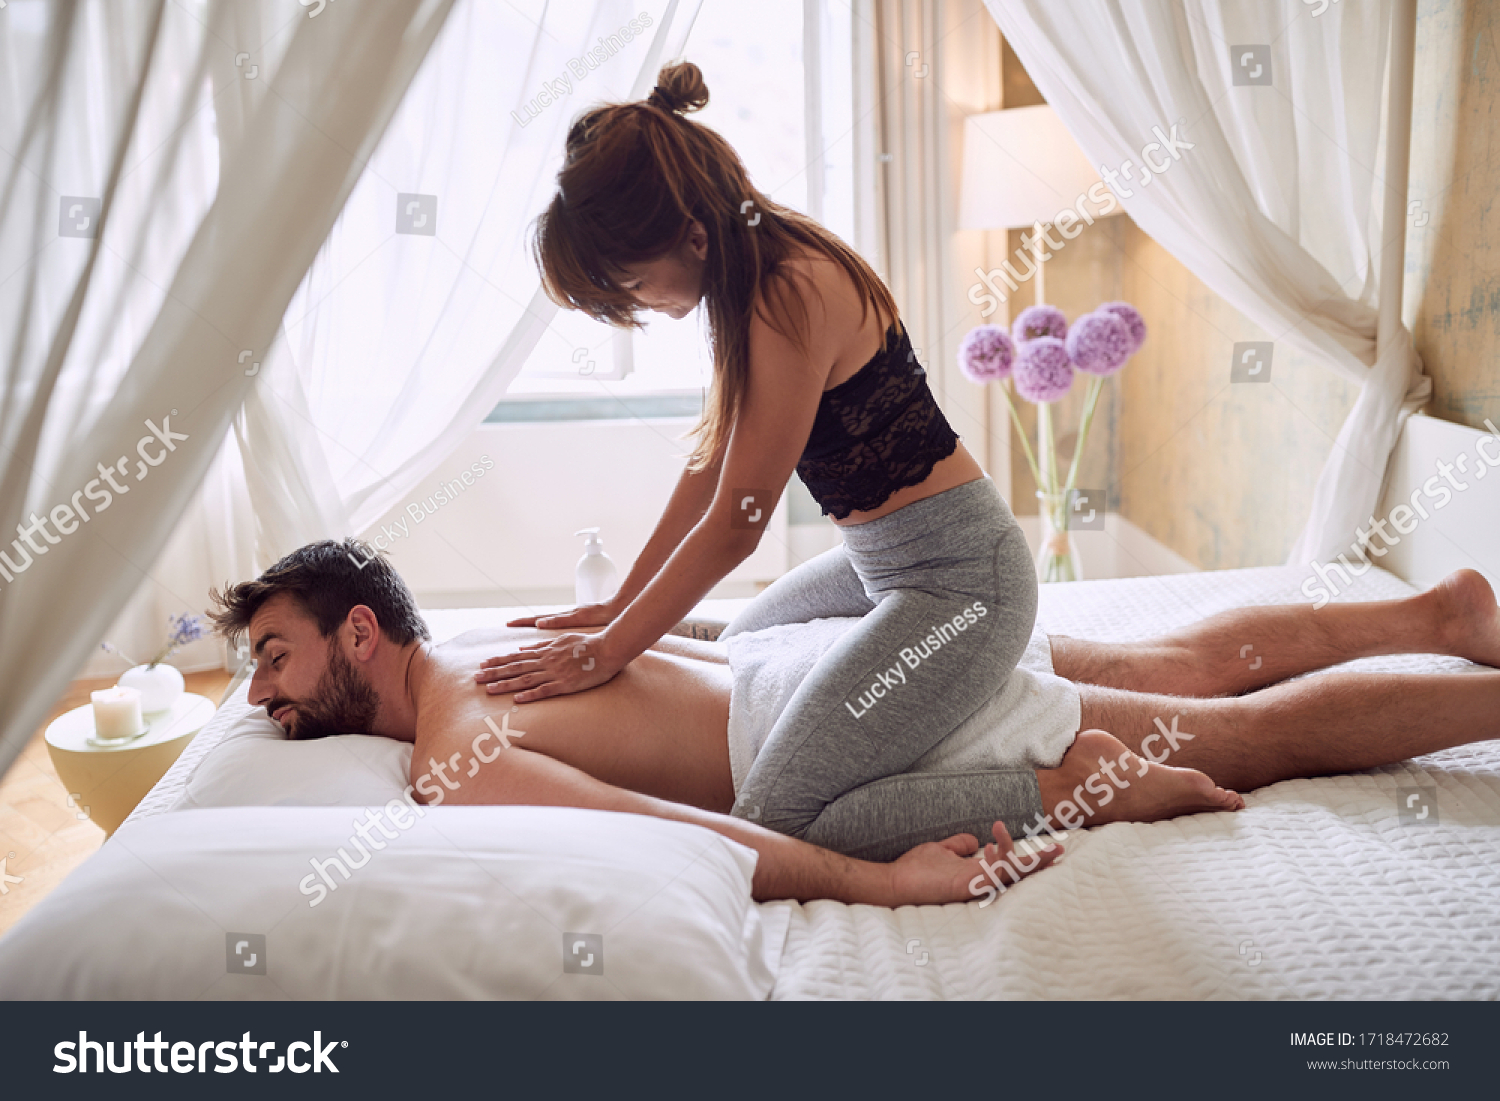 Erotic massage pictures